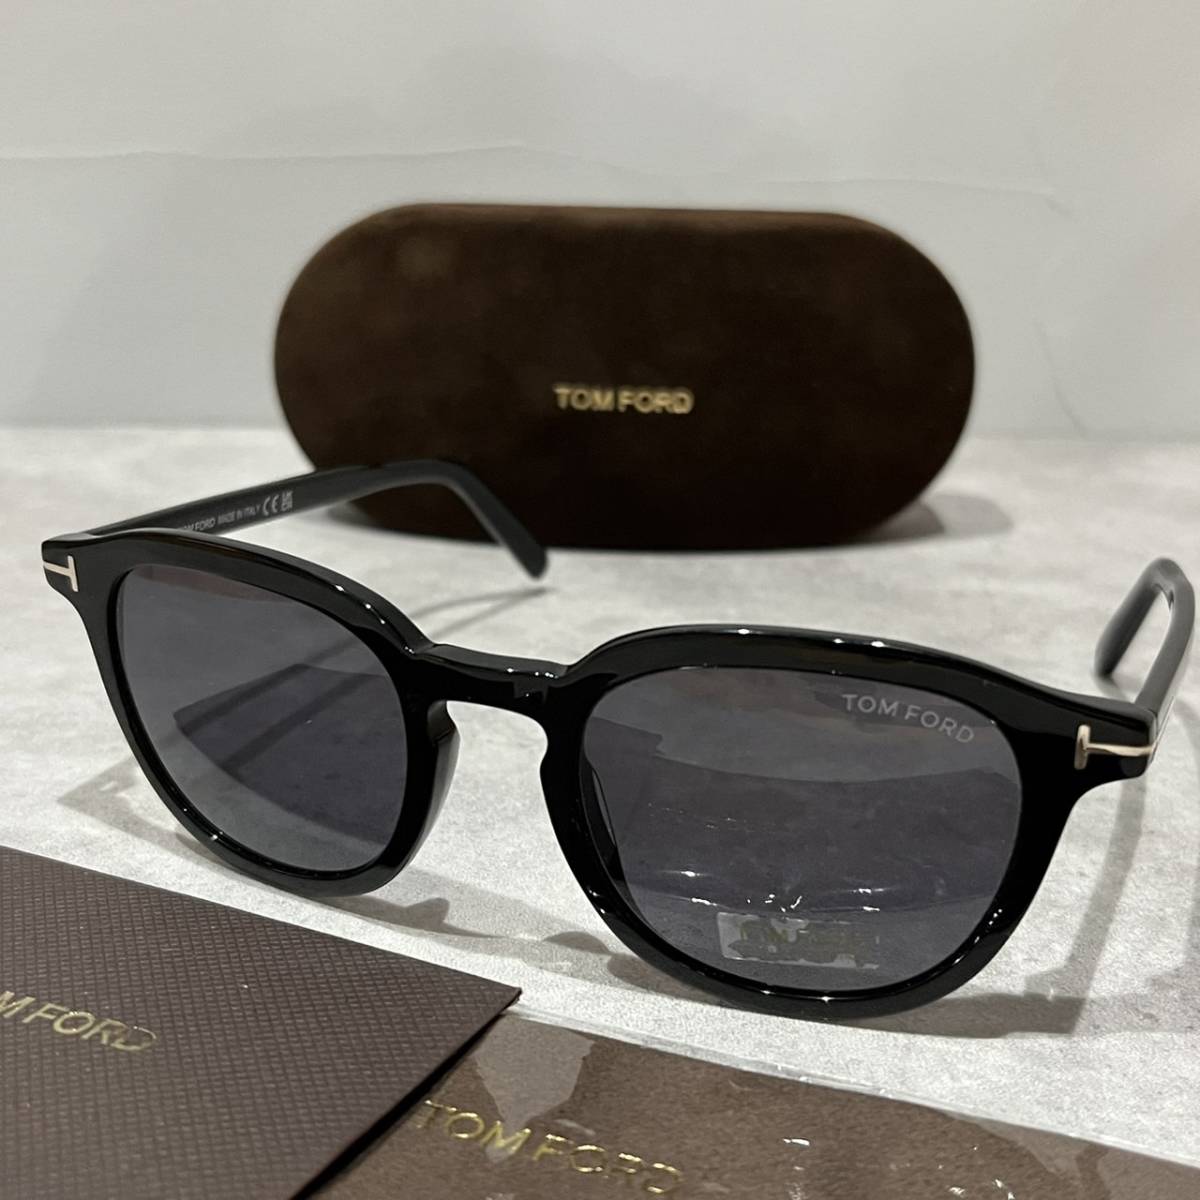 【送料無料】【正規品・新品】TOMFORD トムフォード TF816 FT816 01A フルリム ウェリントン ボストン イタリア製 サングラス メガネ 眼鏡